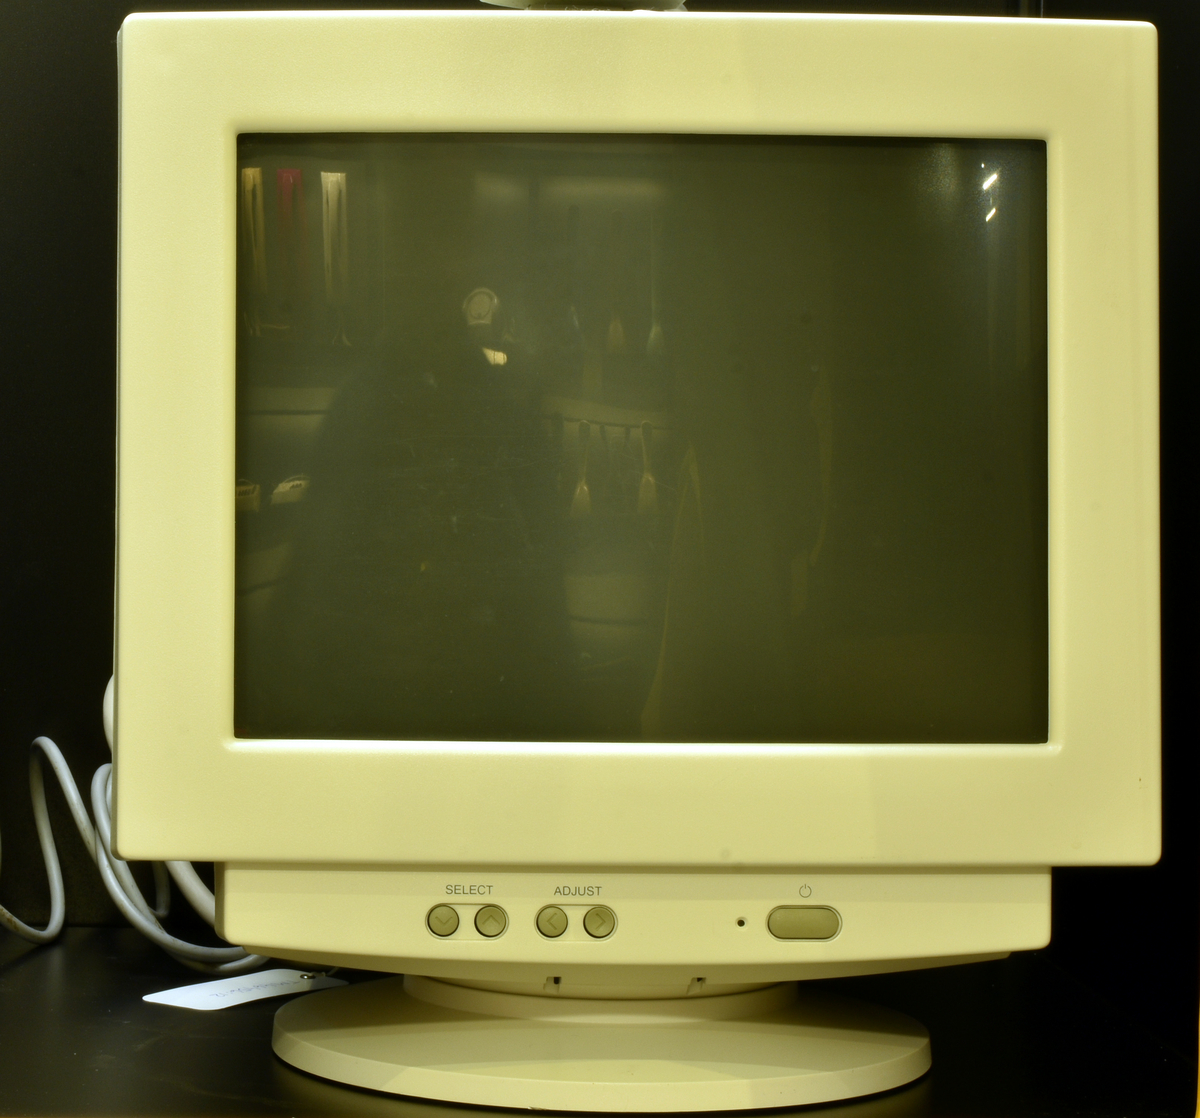 Bildskärm (färg) till datorstation, storlek 15" med VGA-anslutning och upplösning 1024x768. Typ Nokia Display Products / Colour Monitor 449 R, ser.nr. 57911-H-03X0-17.